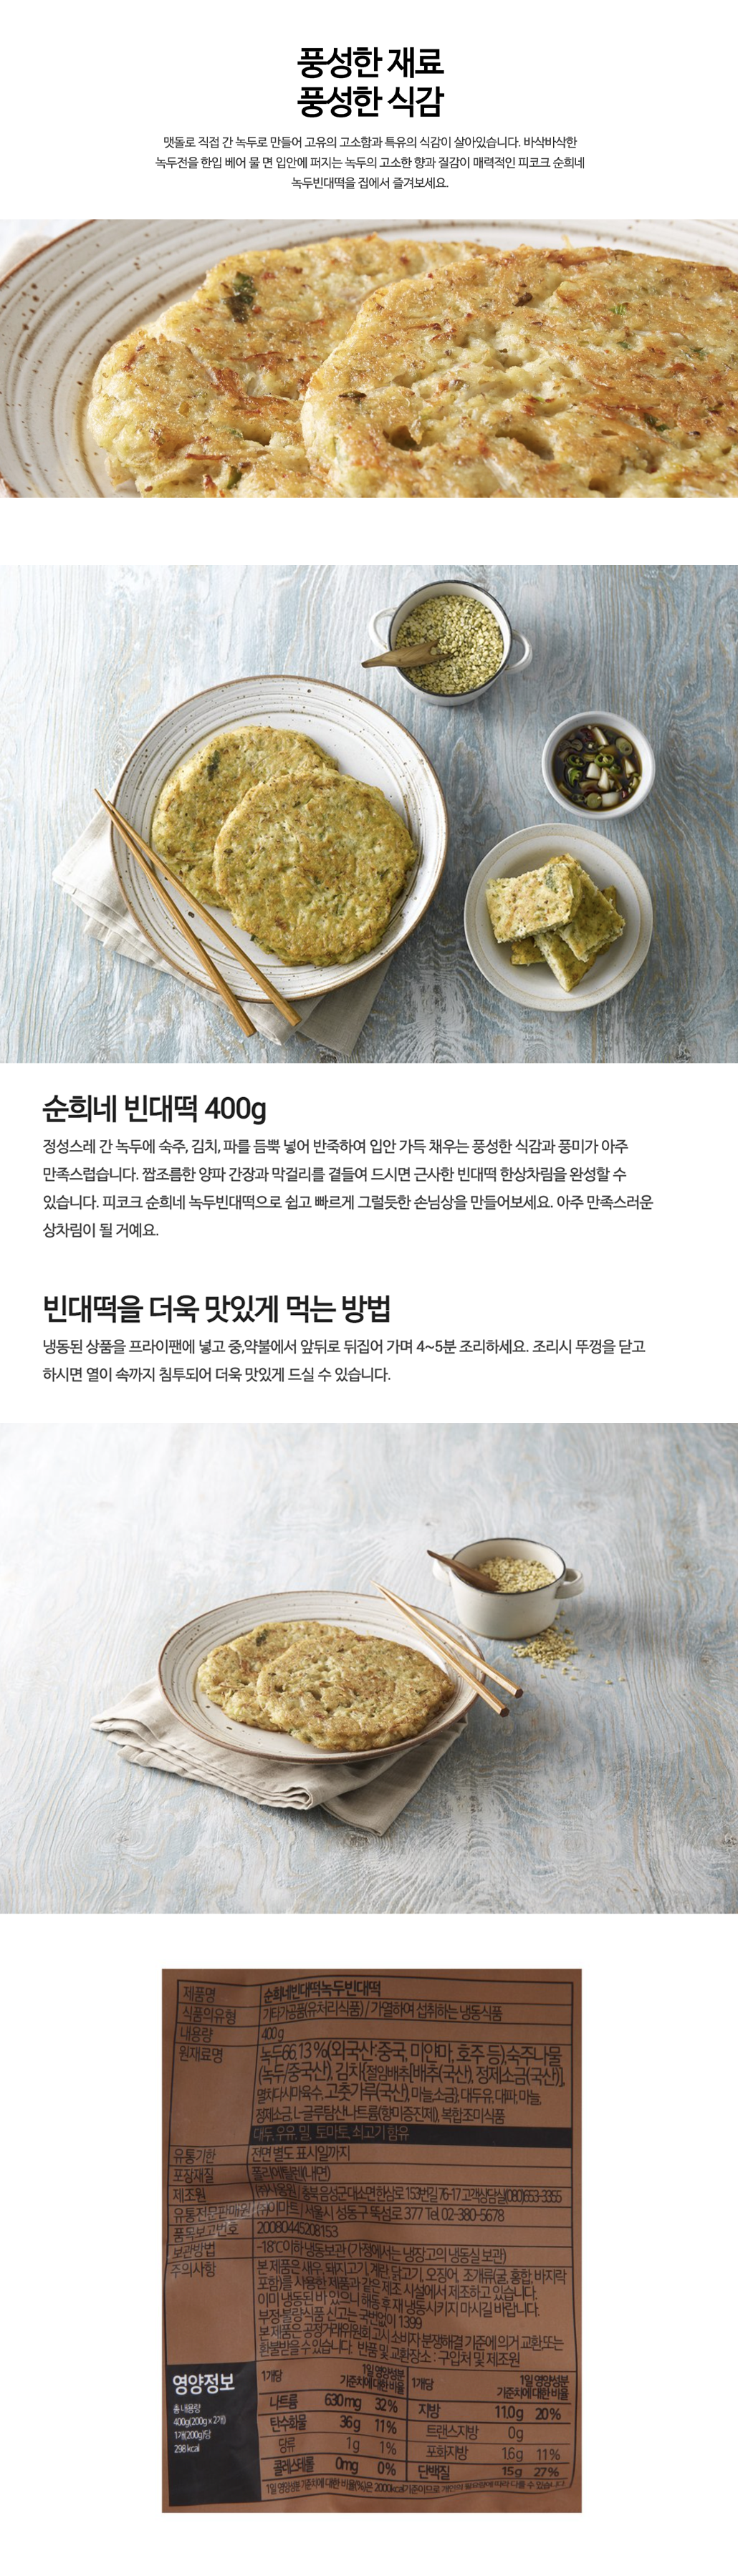 韓國食品-[Peacock] 綠豆煎餅 400g